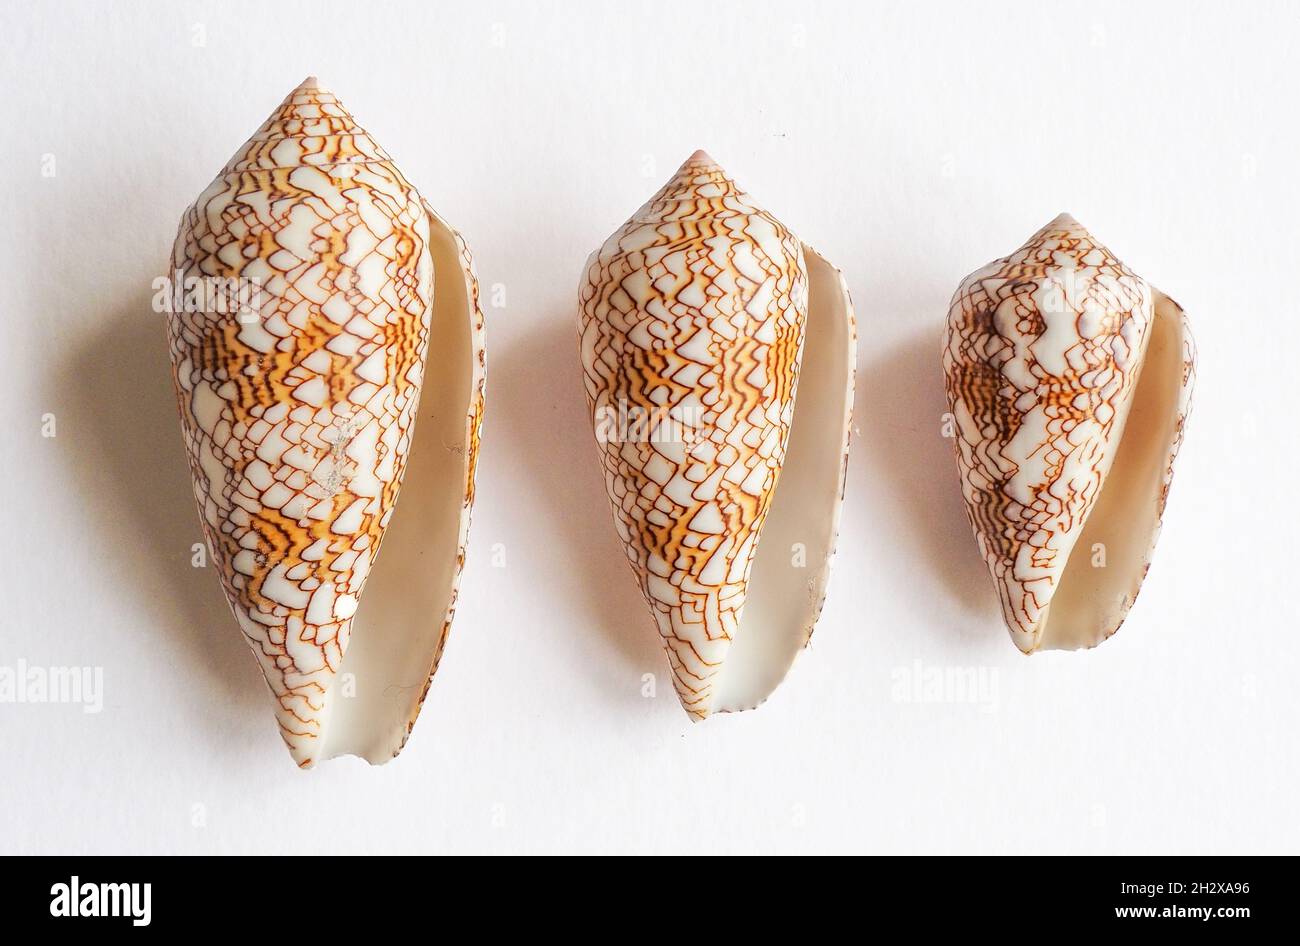 Vue naturelle des coquilles du textile Cone Escargot Conus textile gastéropode marin toxique pour la vie des mers tropicales Banque D'Images